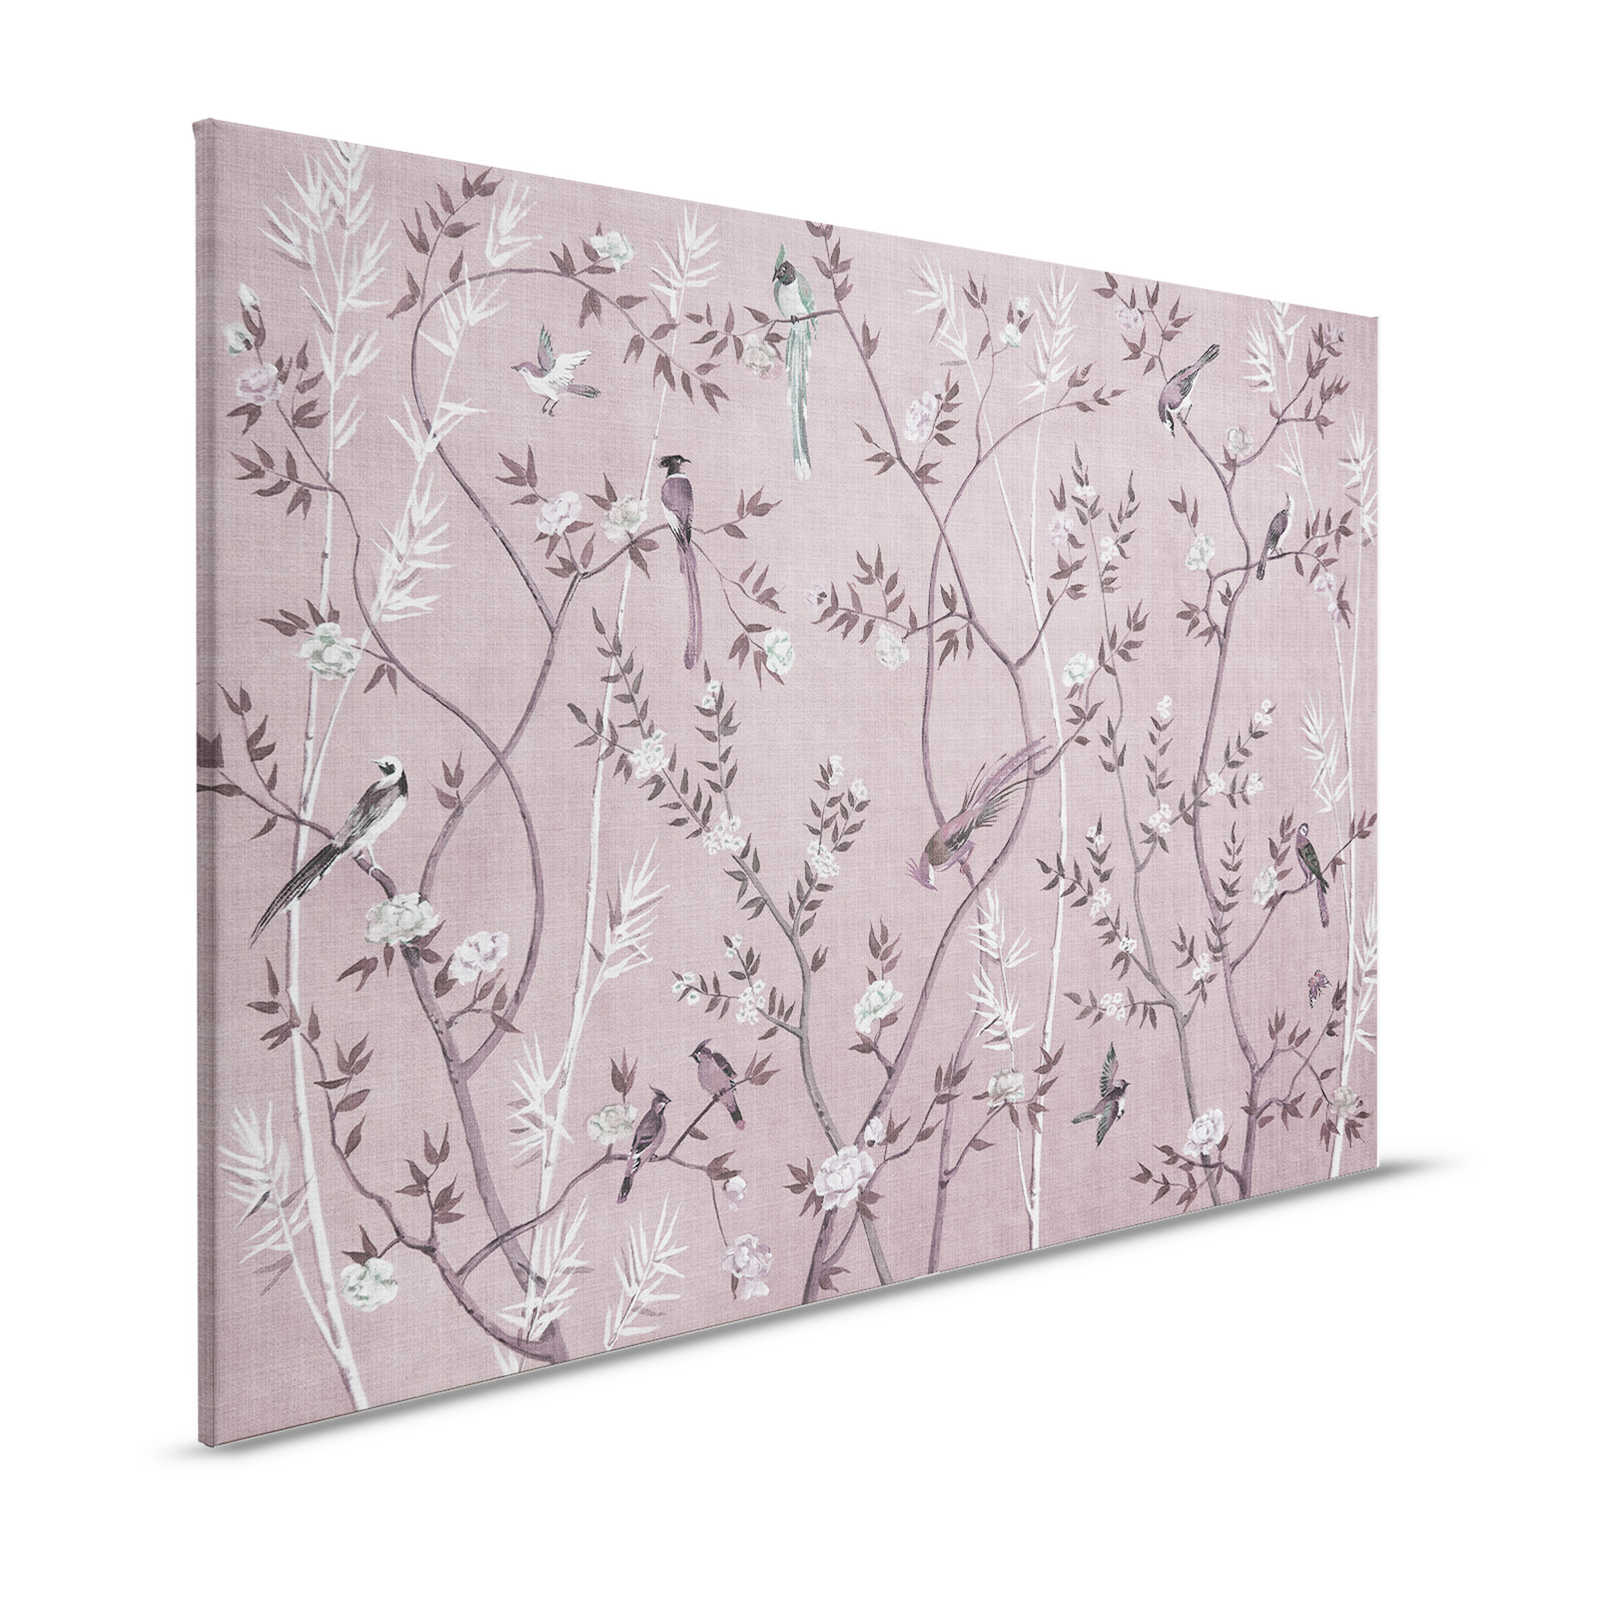 Salón de té 3 - Cuadro en lienzo Diseño de pájaros y flores en rosa y blanco - 1,20 m x 0,80 m
